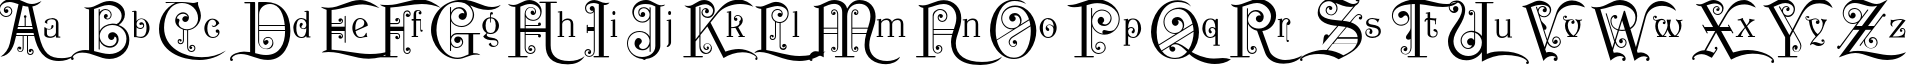 Пример написания английского алфавита шрифтом P22 Kilkenny Initial Cap